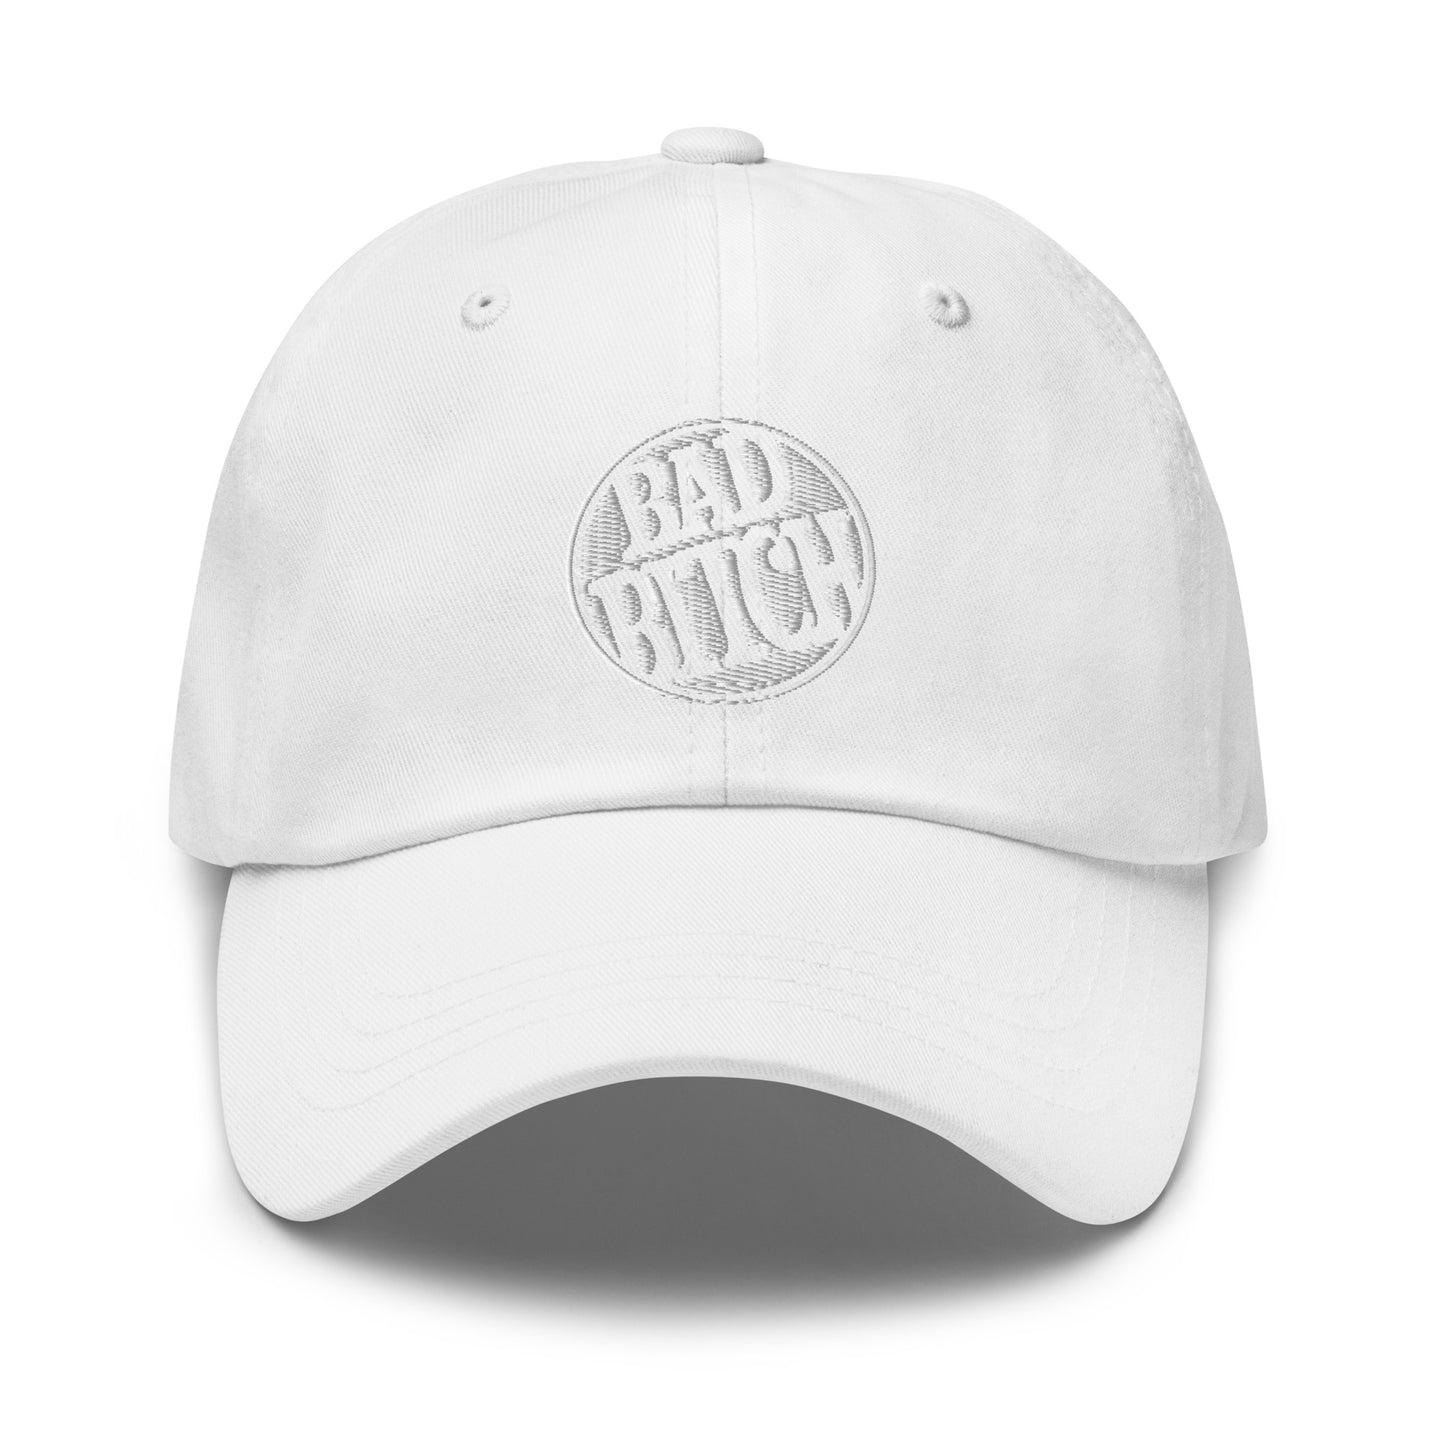 Bad Bitch - Dad hat